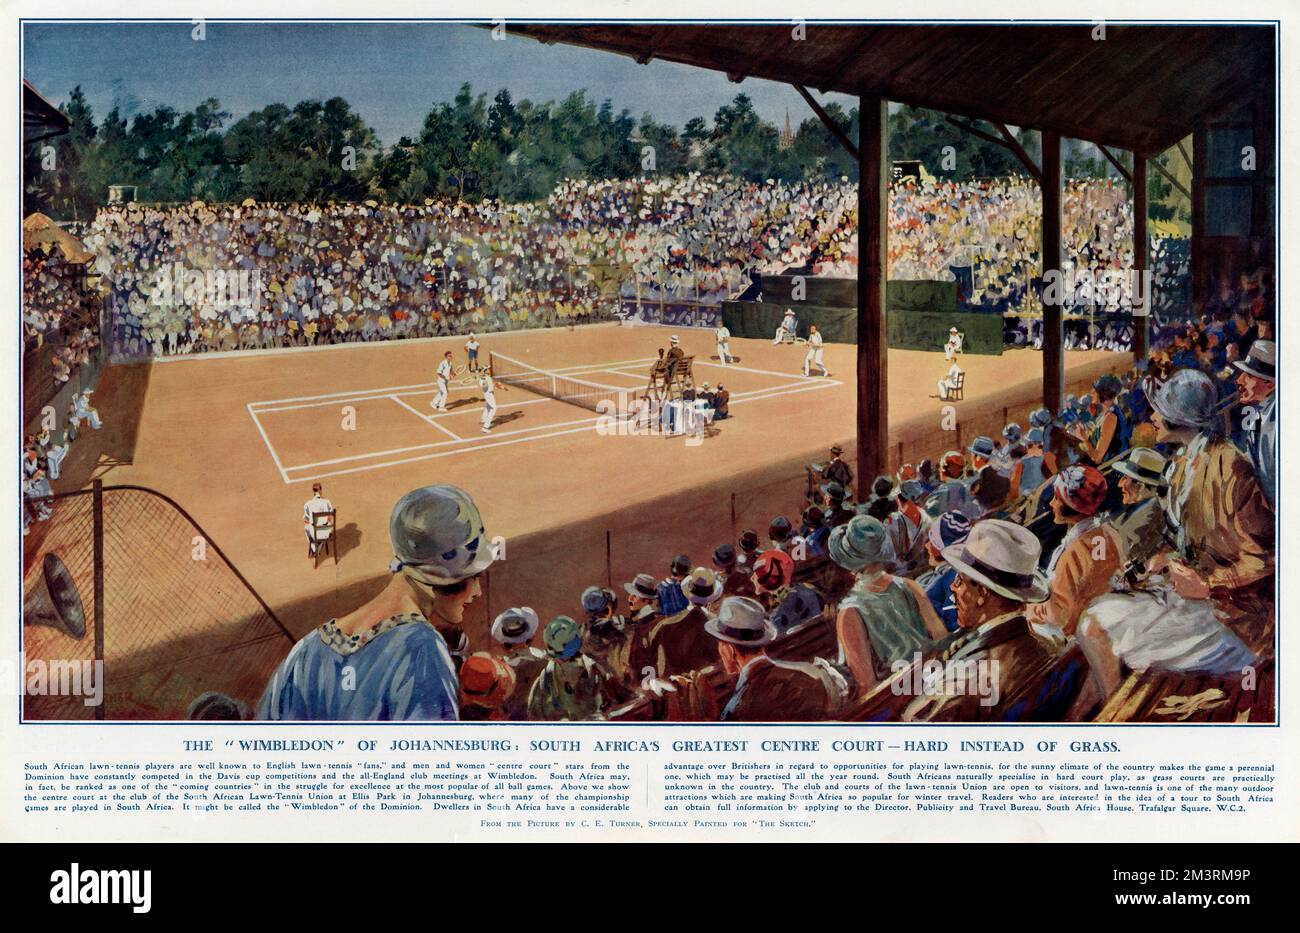 Das „Wimbledon“ von Johannesburg – eine Menge Zuschauer, die ein Spiel auf einem Hartplatz in Südafrika sehen. Datum: 1929 Stockfoto